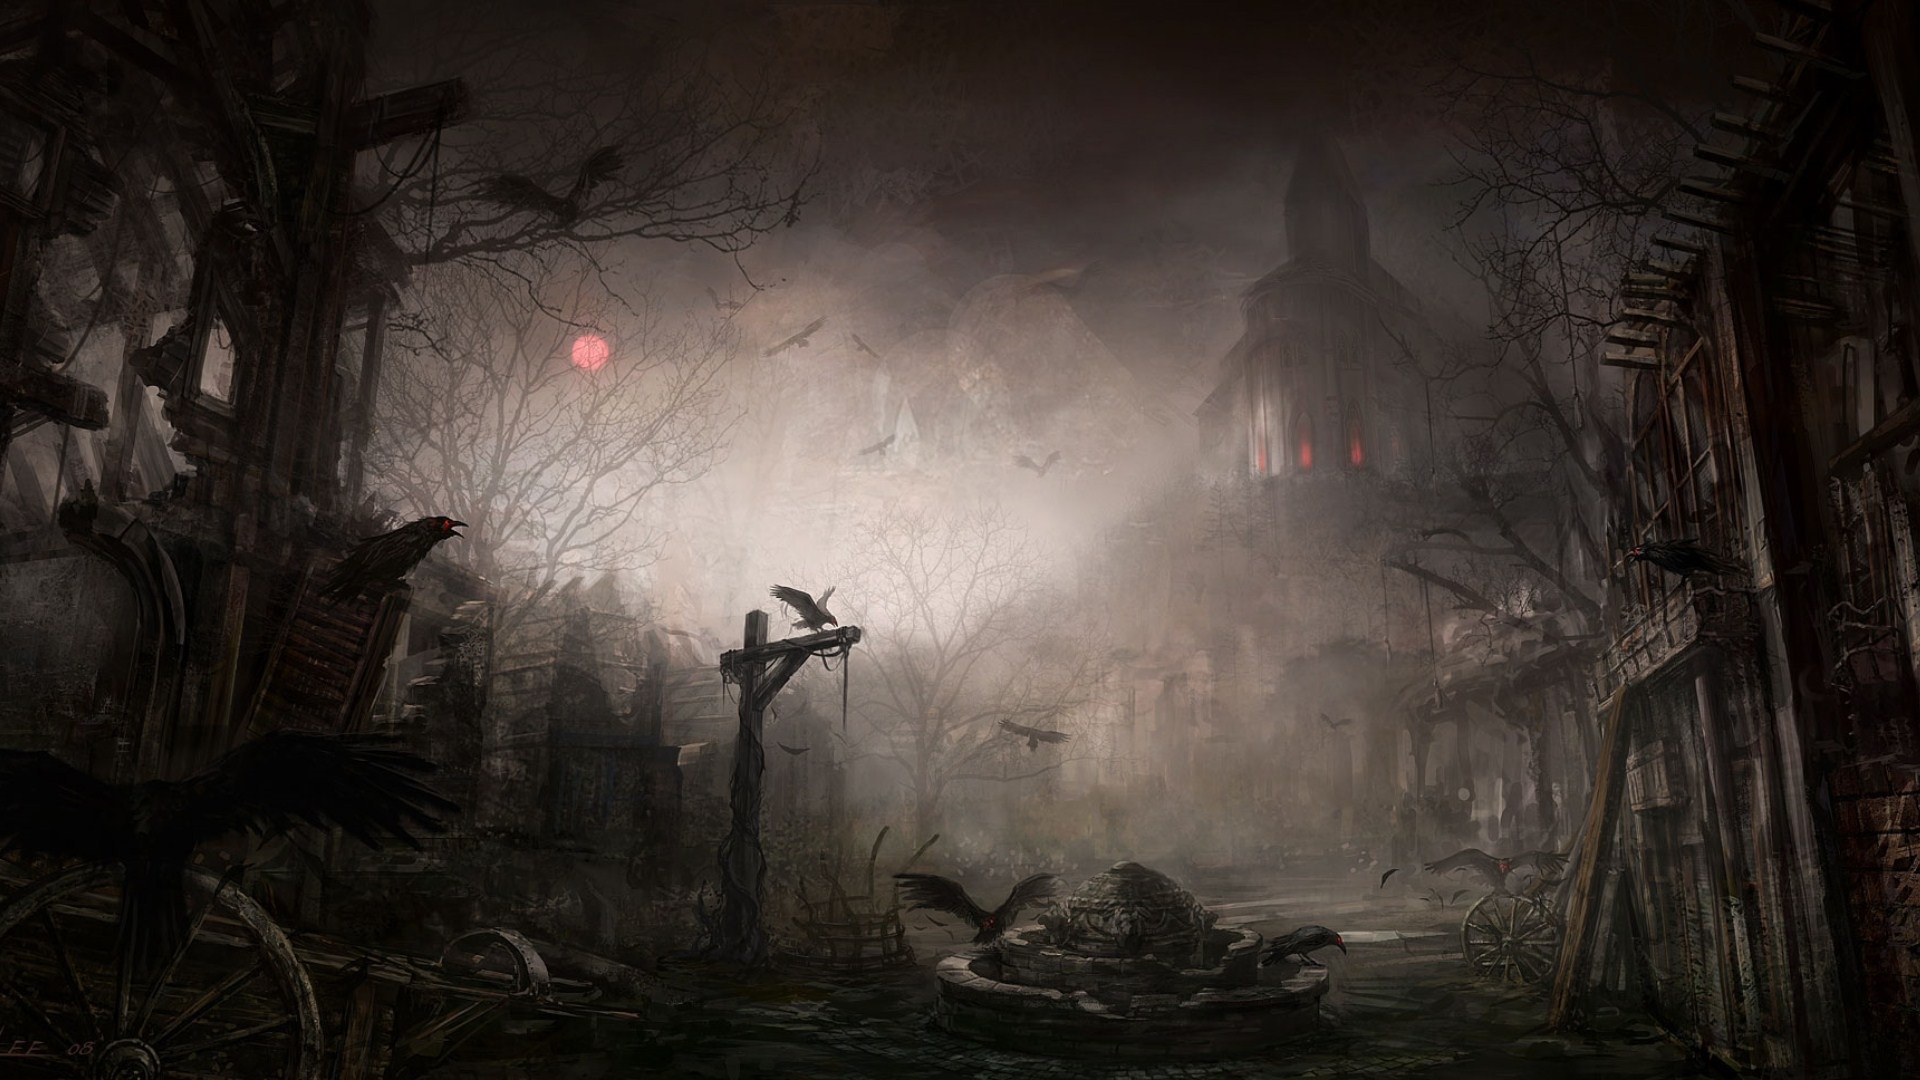 Creepy Landscape Wallpaper 1080p Desktop,, Hd - Spooky Horror Halloween Background - HD Wallpaper 